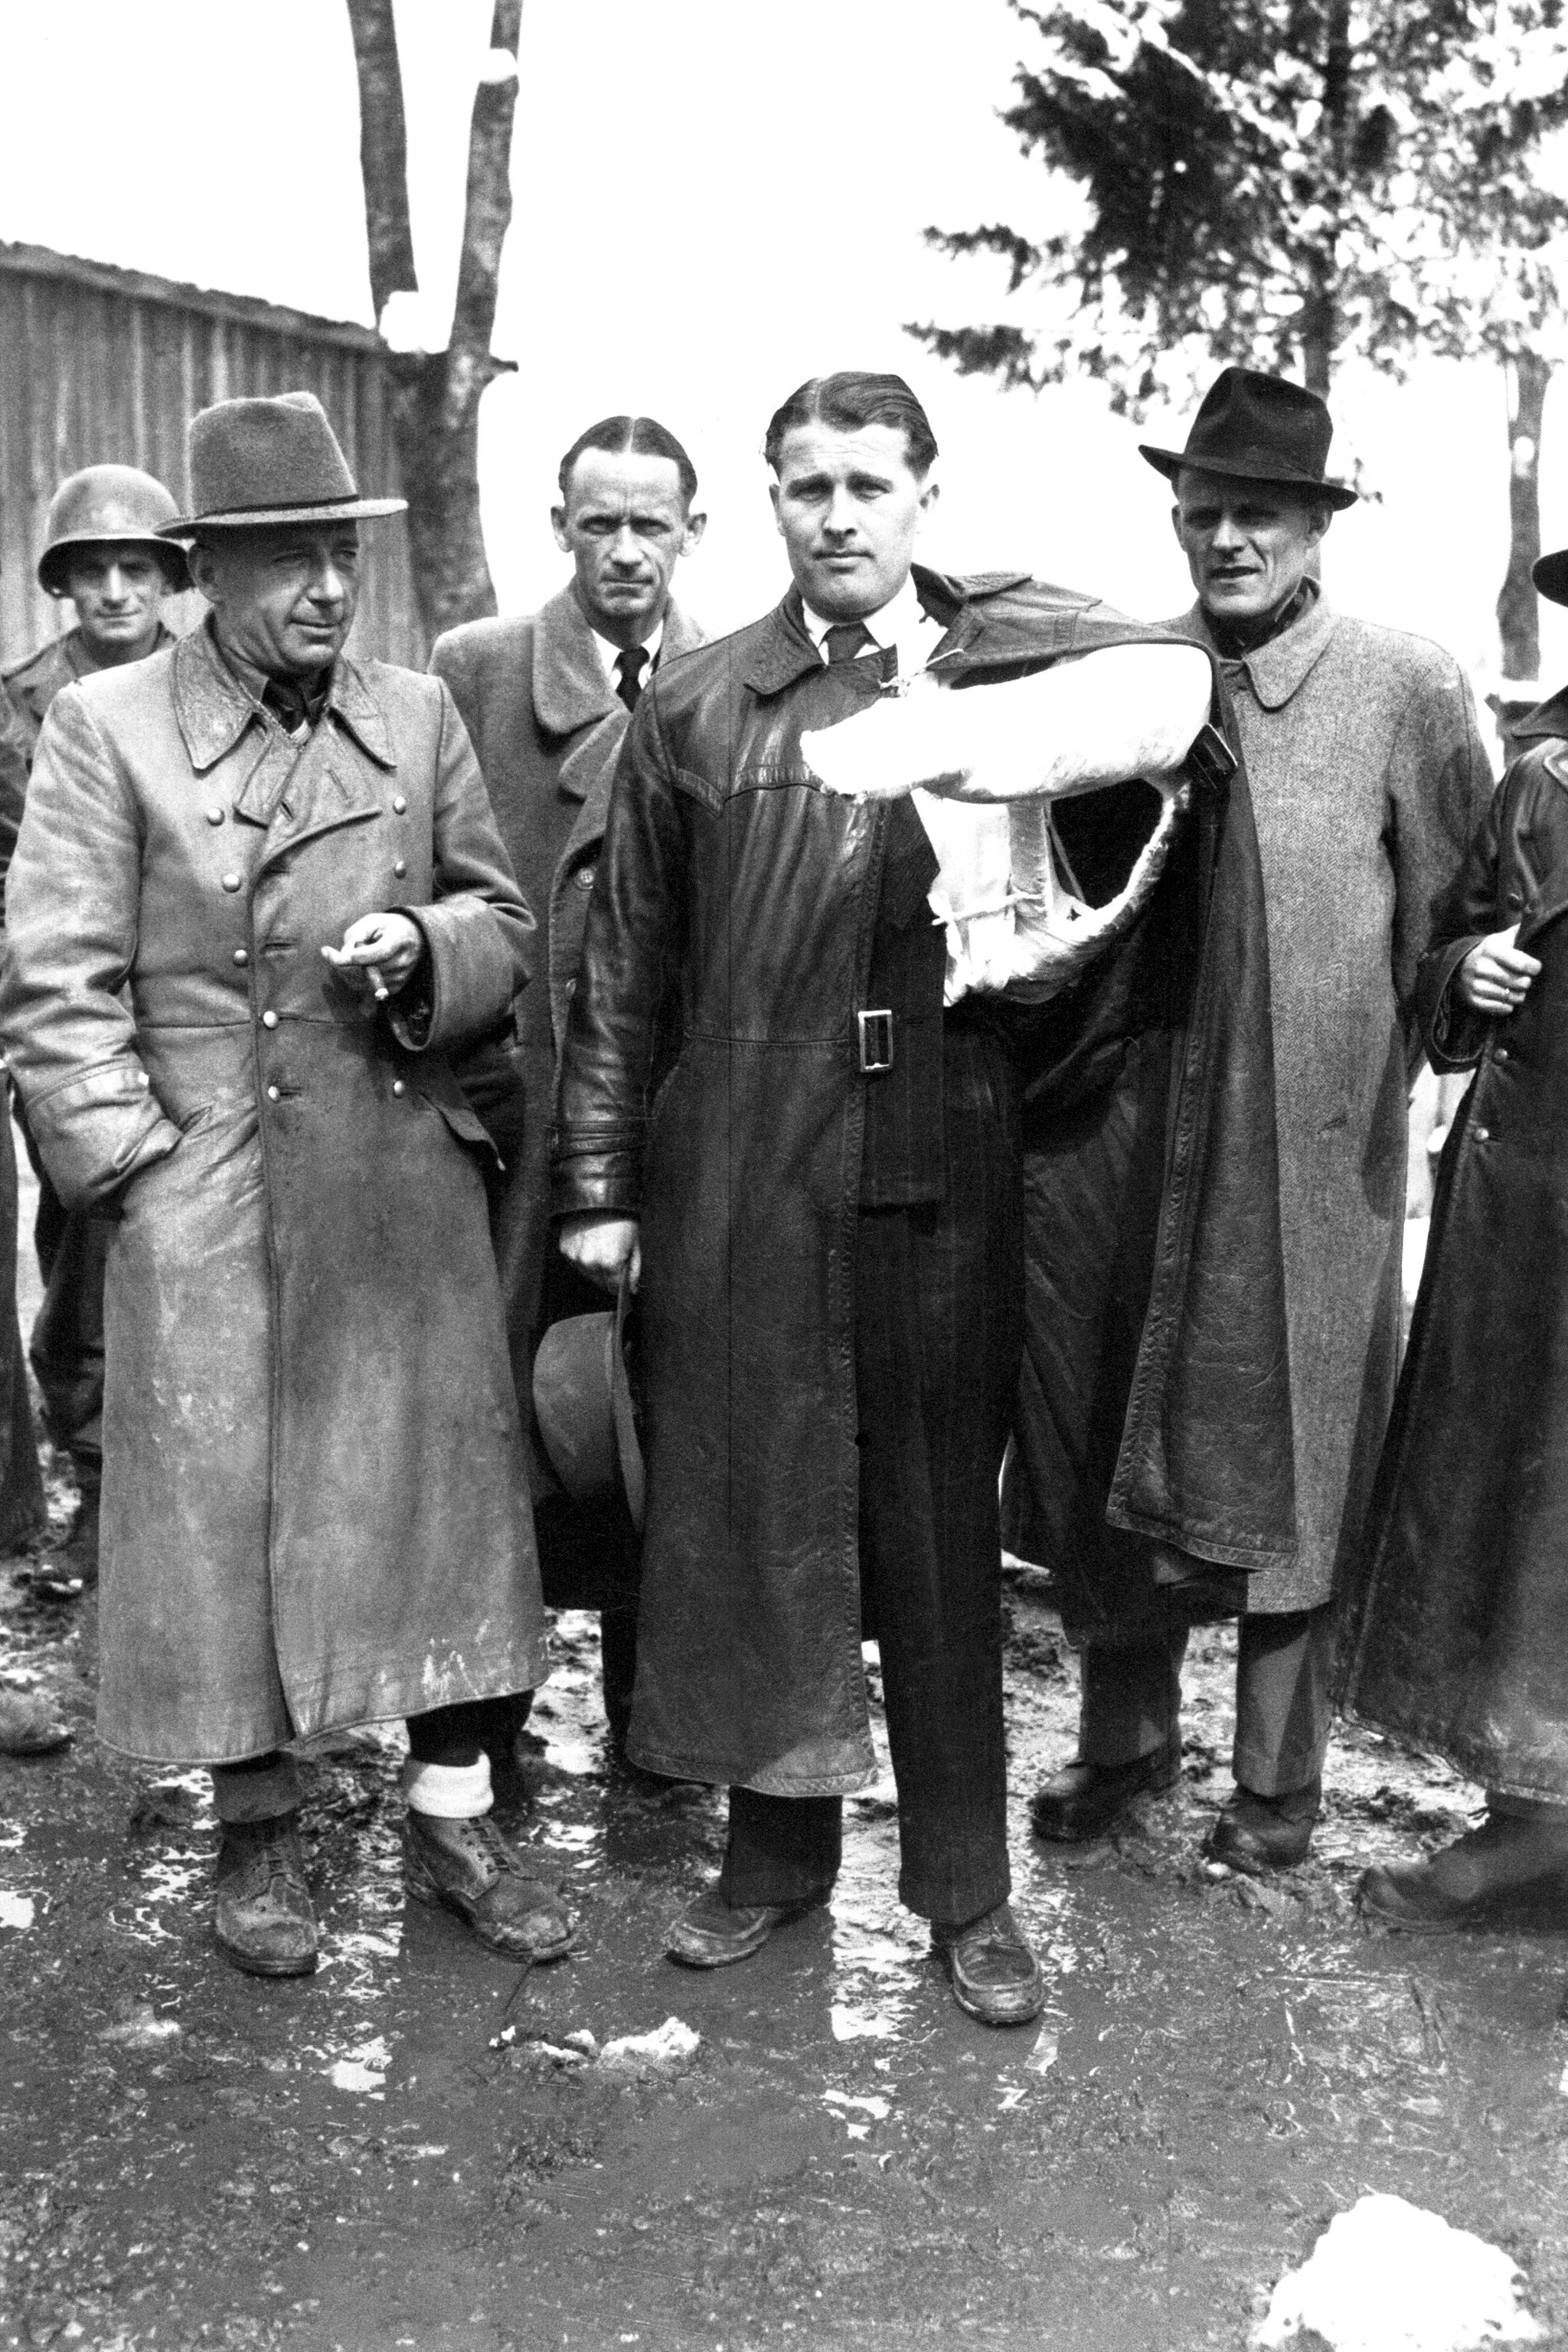 Walter Dornberger, Herbert Axter, Wernher von Braun, Hans Lindenberg, and Bernhard Tessmann (partially cropped), Austria, 3 May 1945